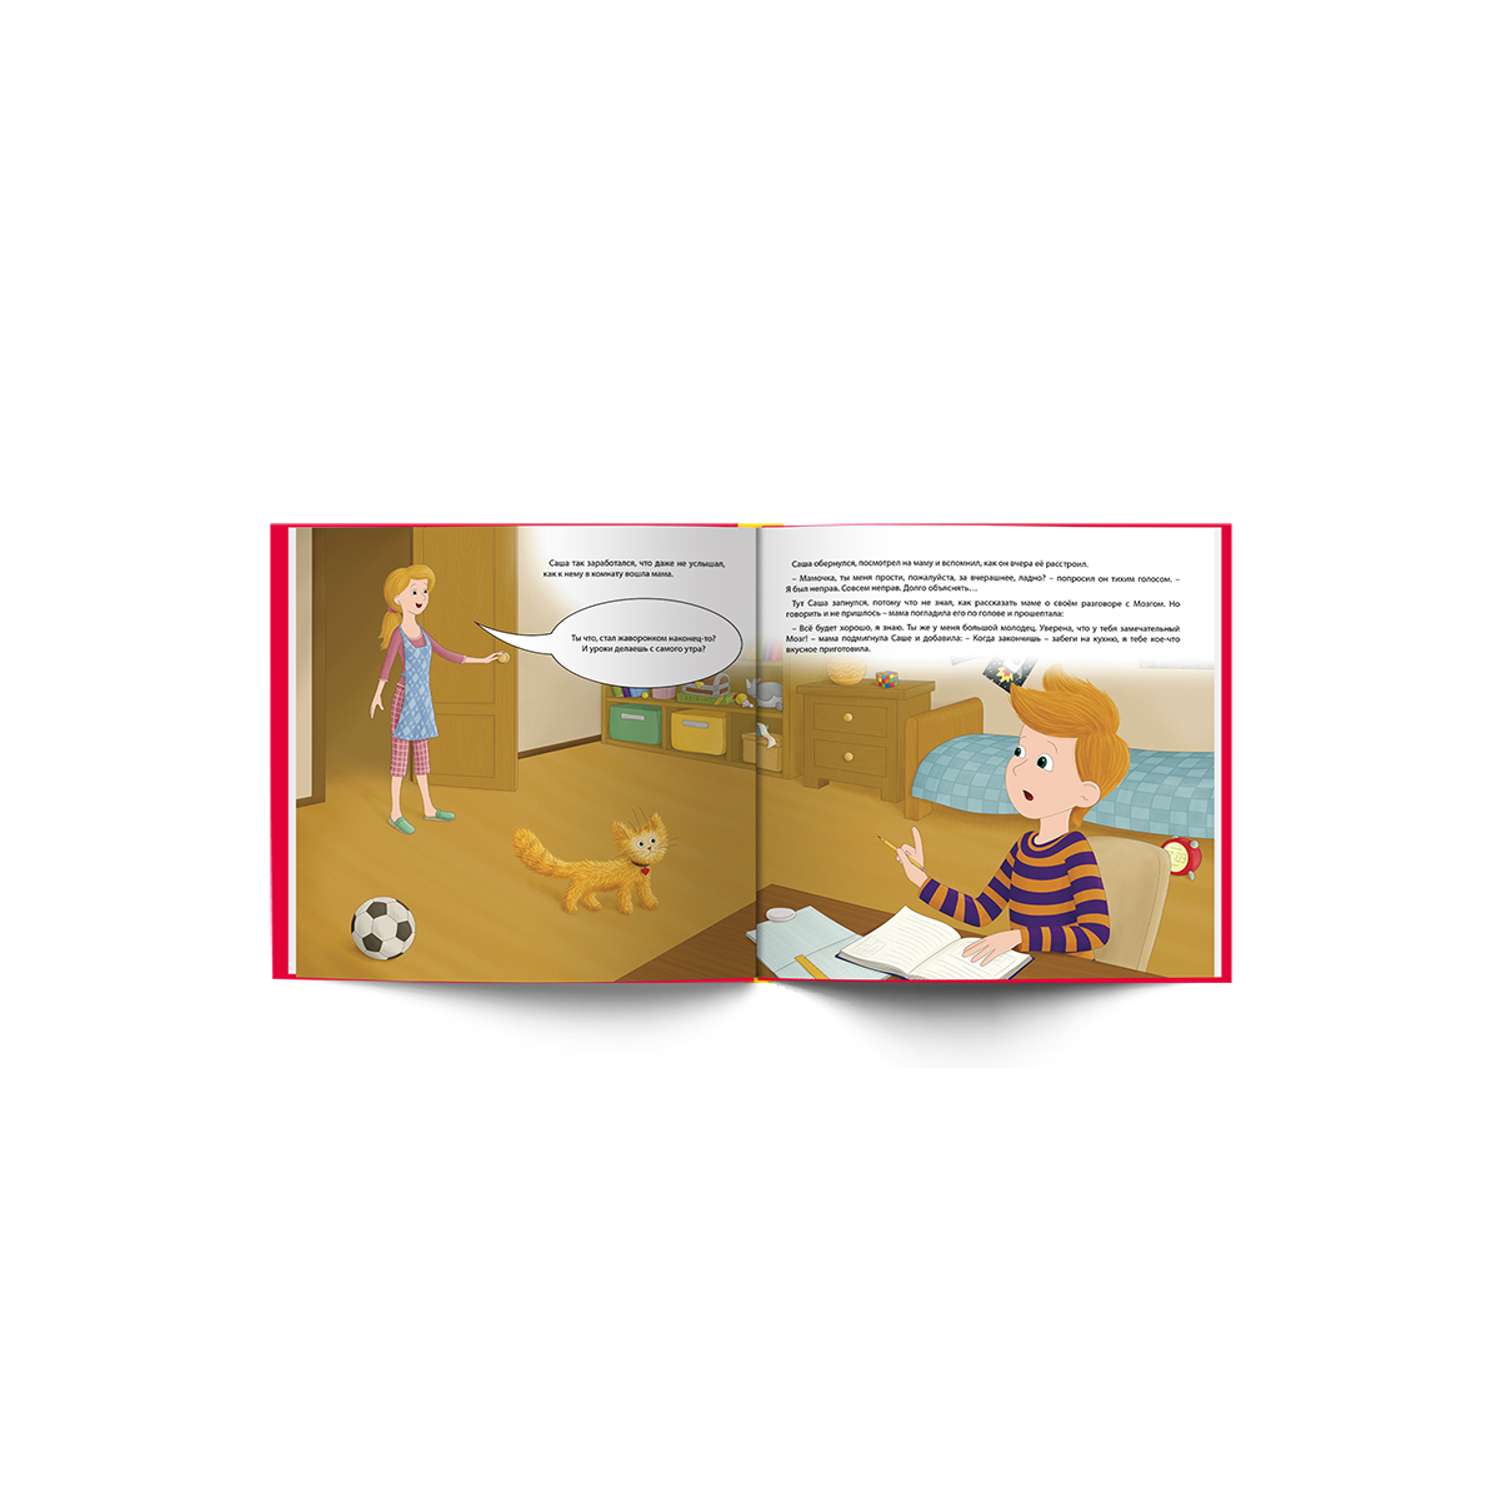 Книга ИД НЕВА Антигаджет Книга о том как правильно учиться и отдыхать Академия смысла для детей - фото 7